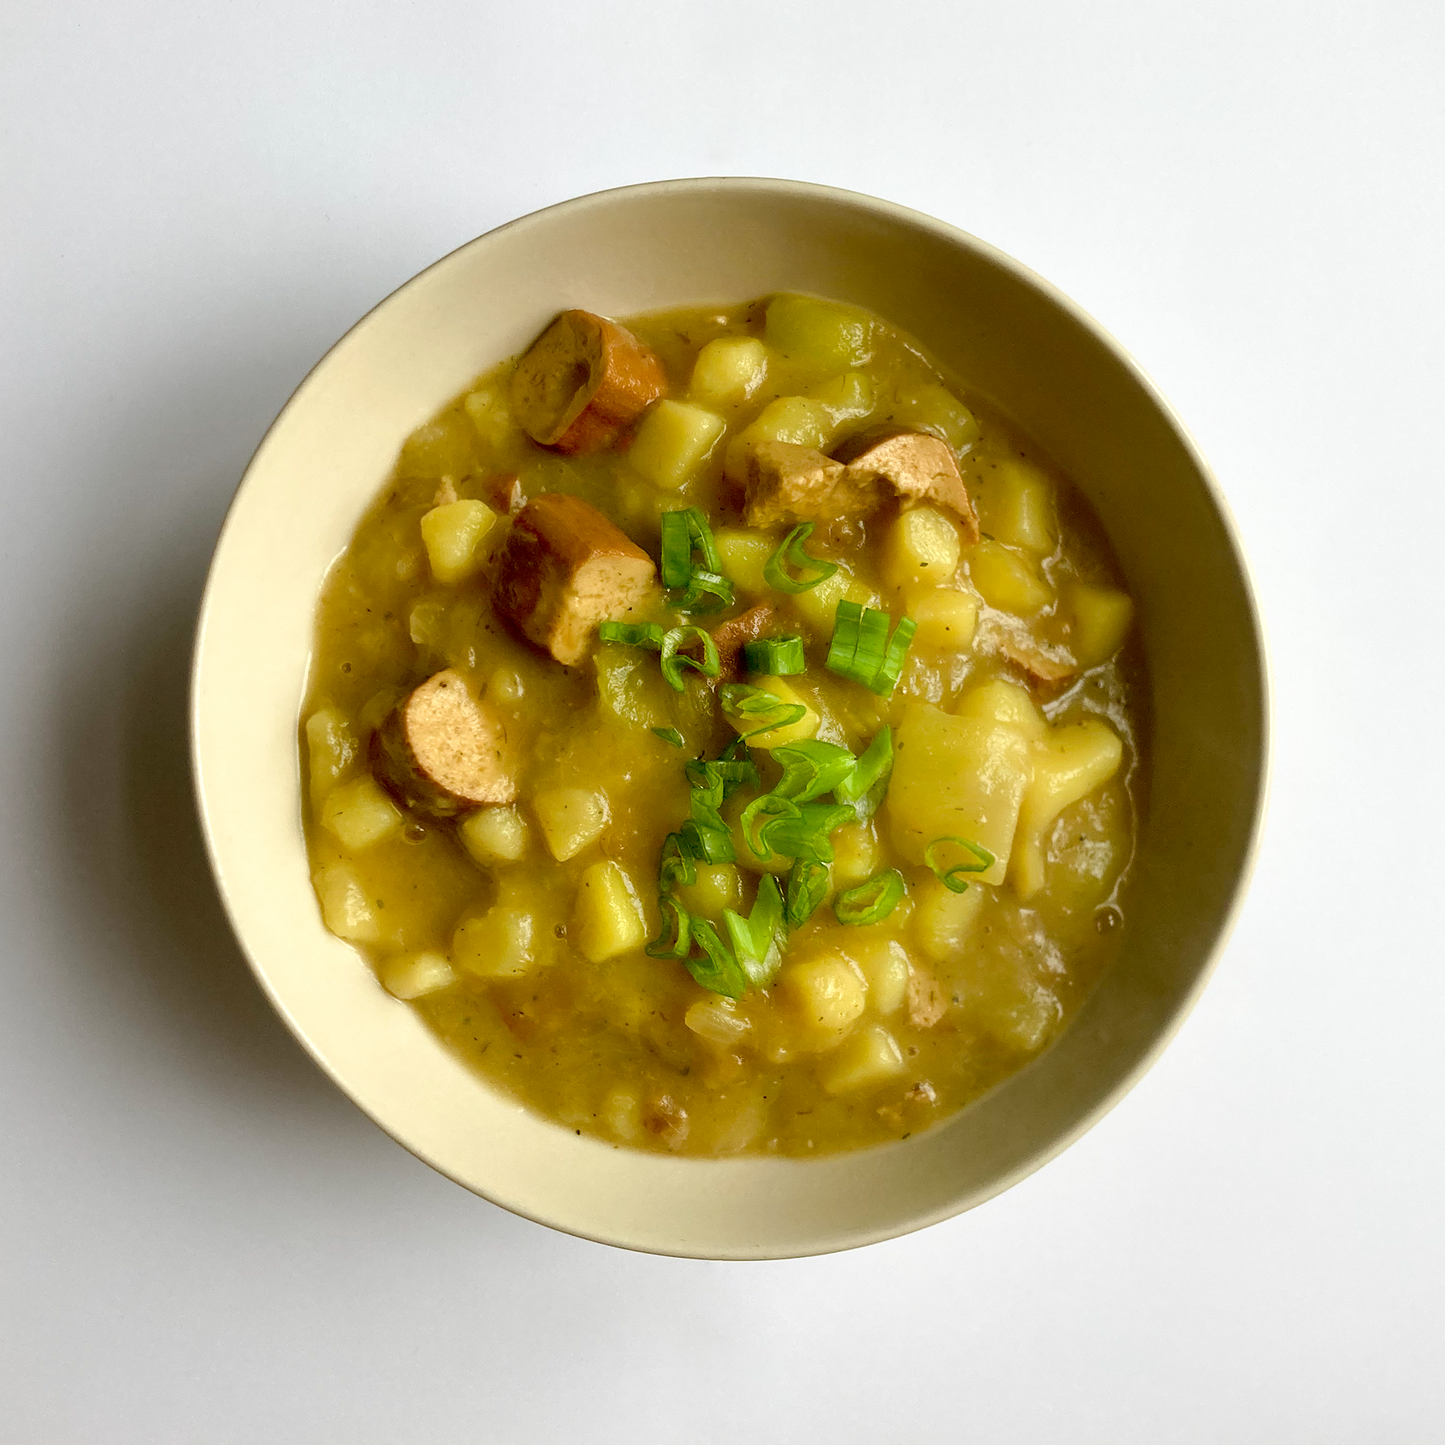 Kartoffel-Zucchini-Suppe mit Tofu-Würstchen